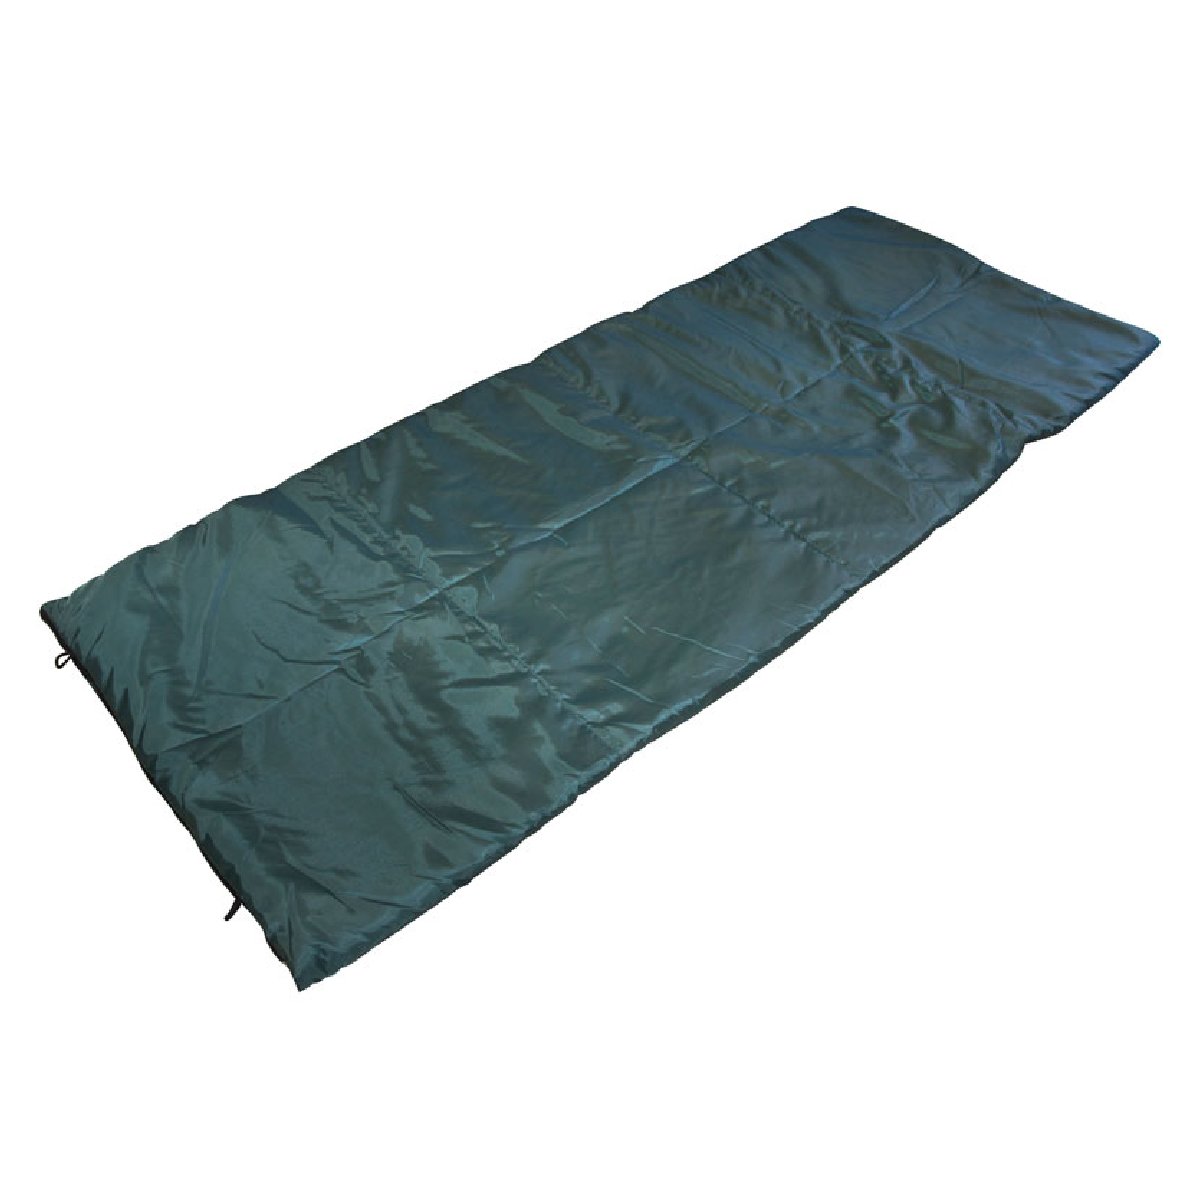 Спальник туристический Ecos CO2S 200х75см (998166) (мешок-одеяло)Купить